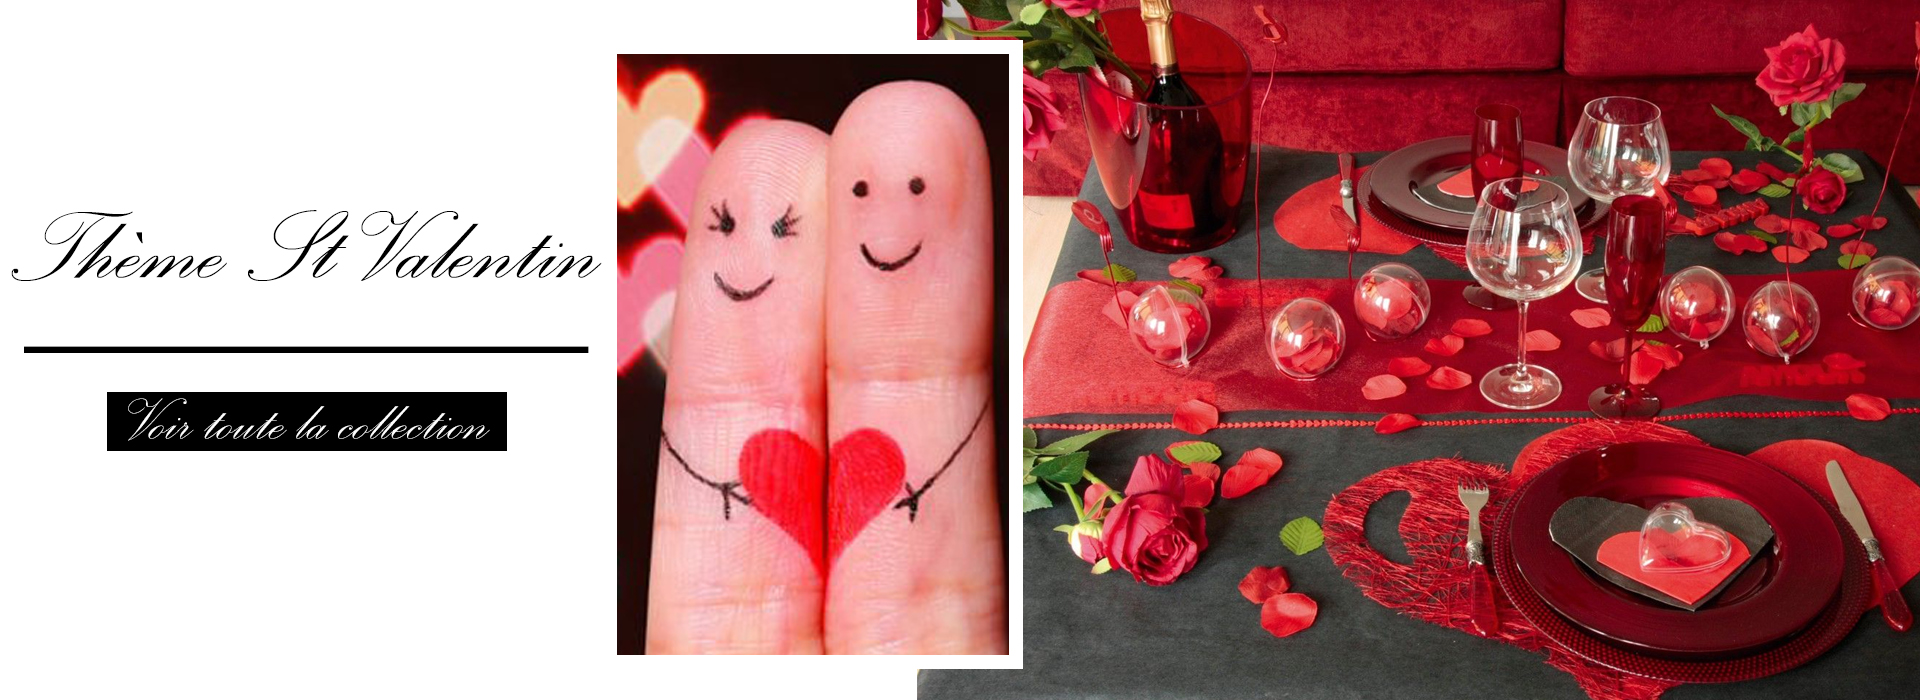 Décoration romantique - Pour la Saint-Valentin, un mariage